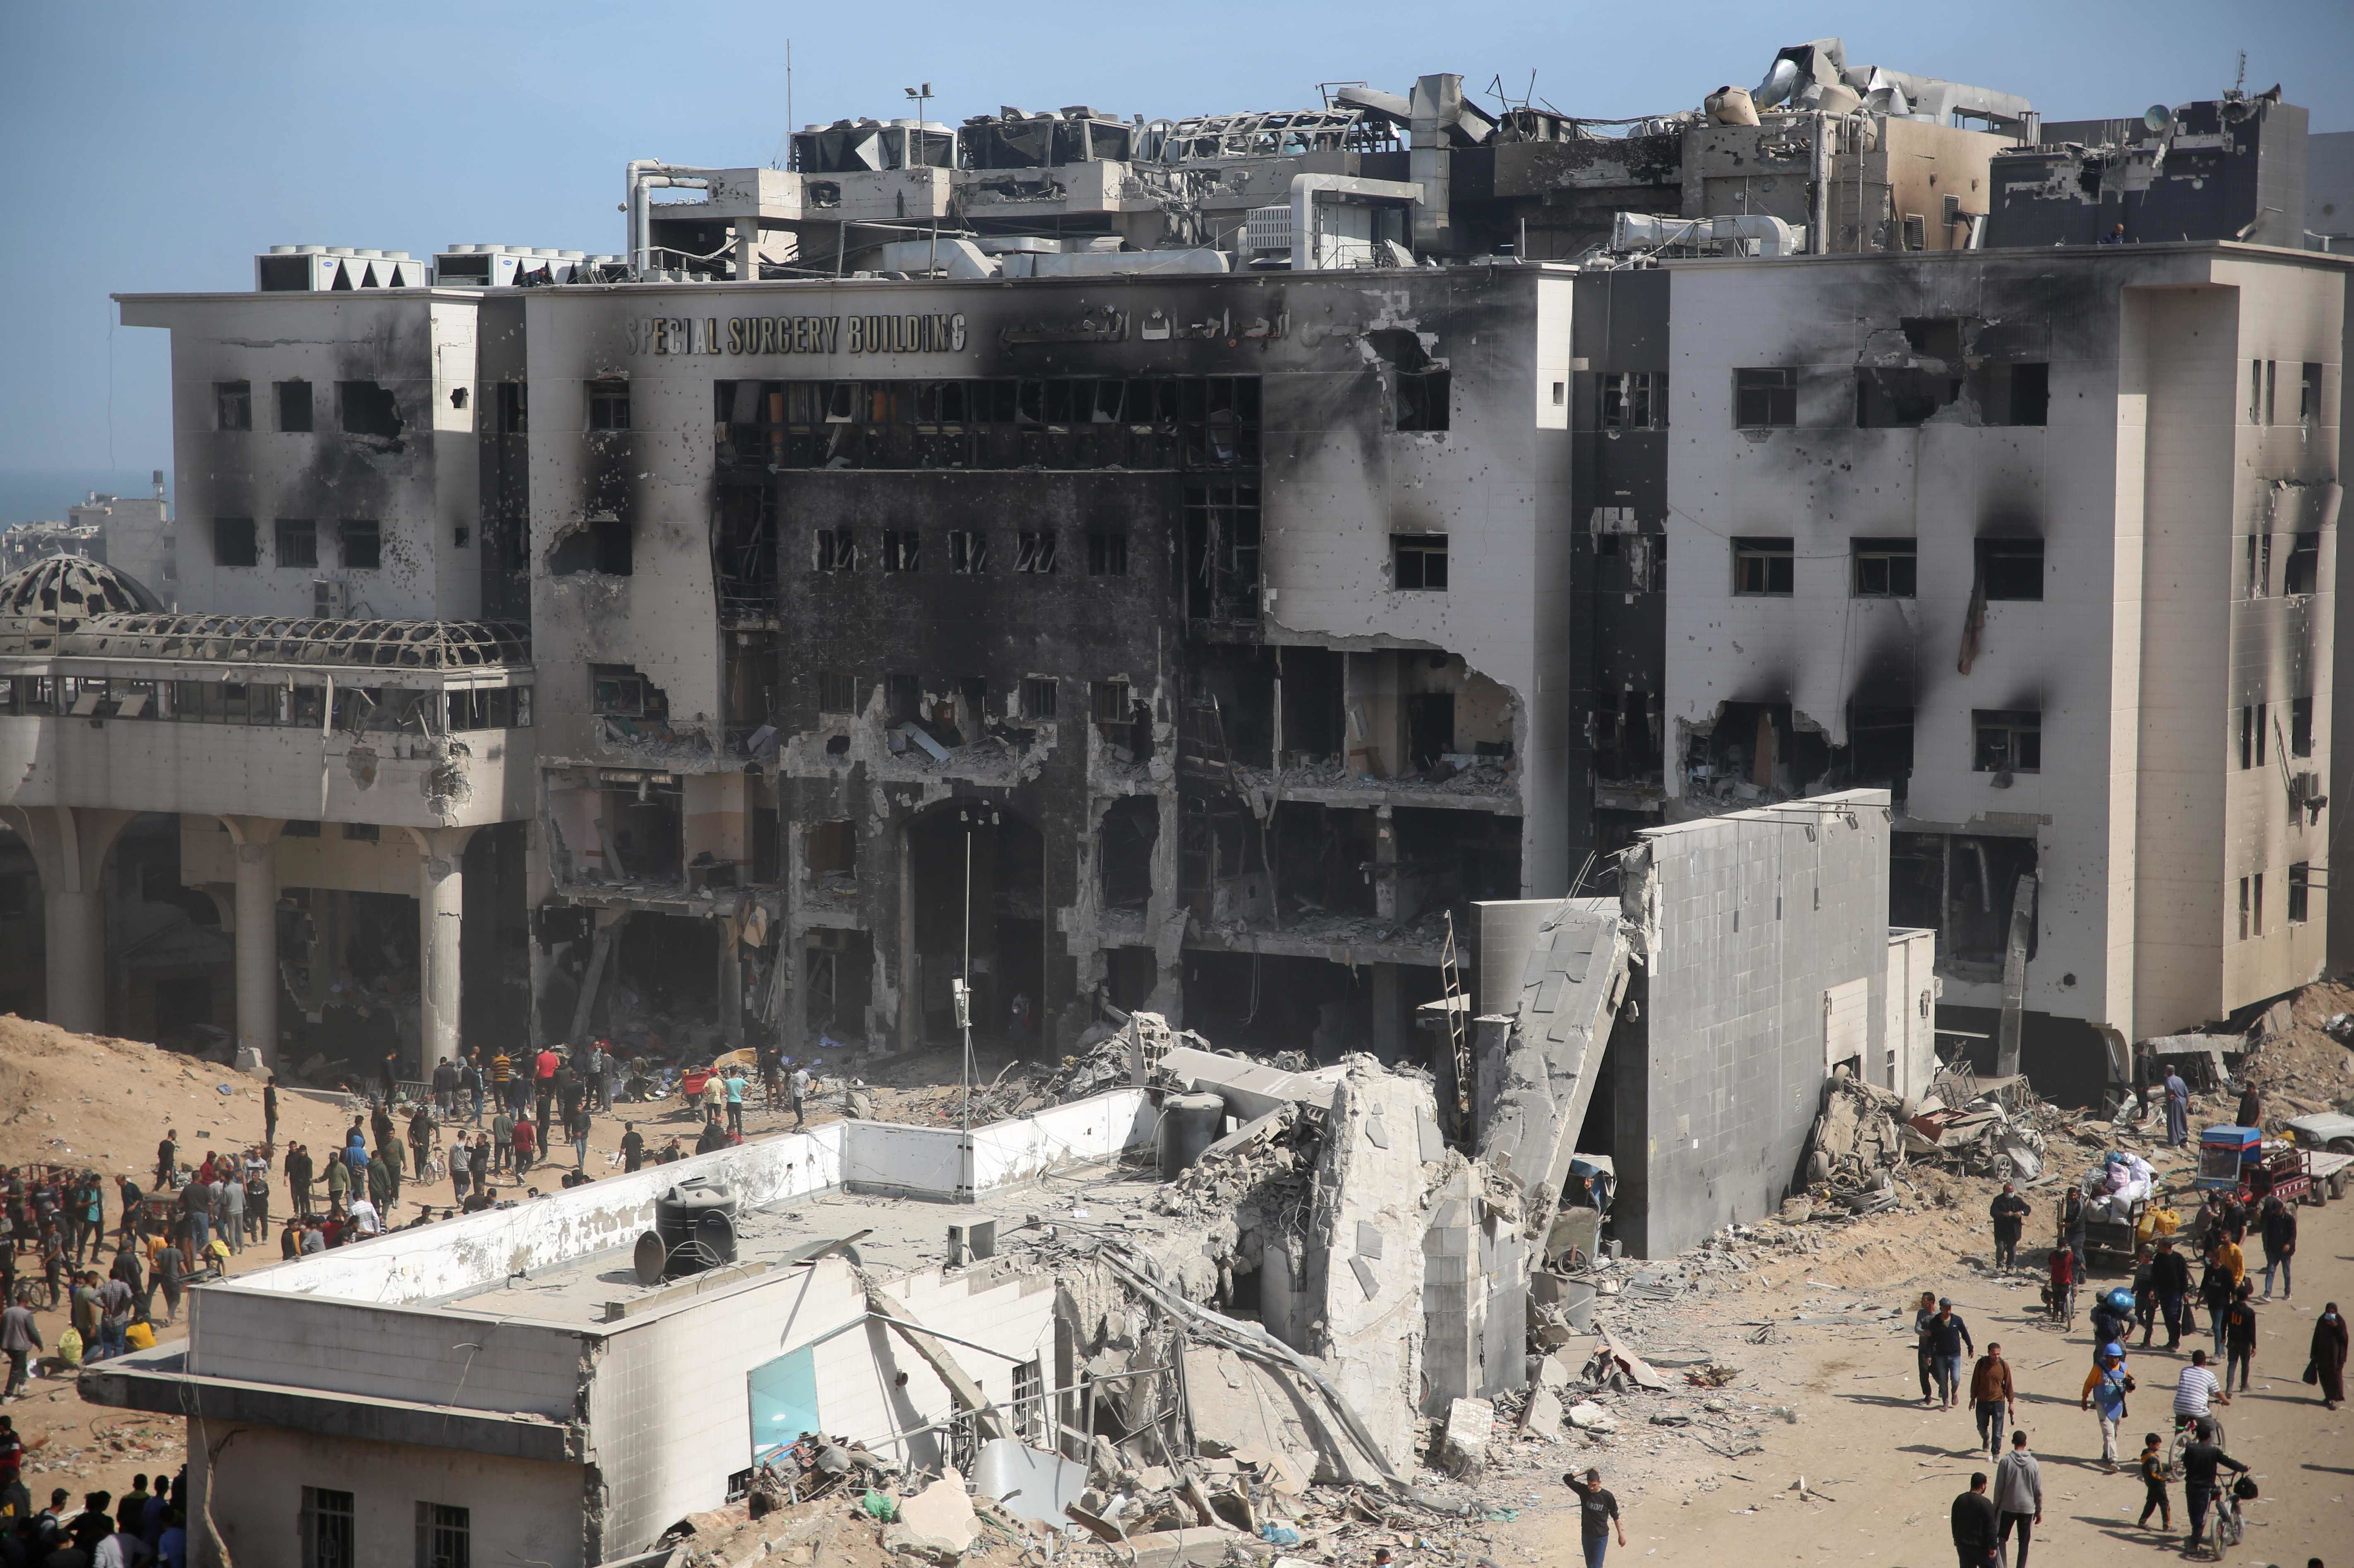 Şifa Hastanesinin en yeni ve en büyük binası olan İhtisas Cerrahi Binası da kullanılamaz hale geldi. Bombalanan binanın birçok katı yıkıldı. Binanın zemin ve birinci katları neredeyse tamamen yıkılırken, yıkılmayan katlar ise İsrail ordusu tarafından ateşe verildi.